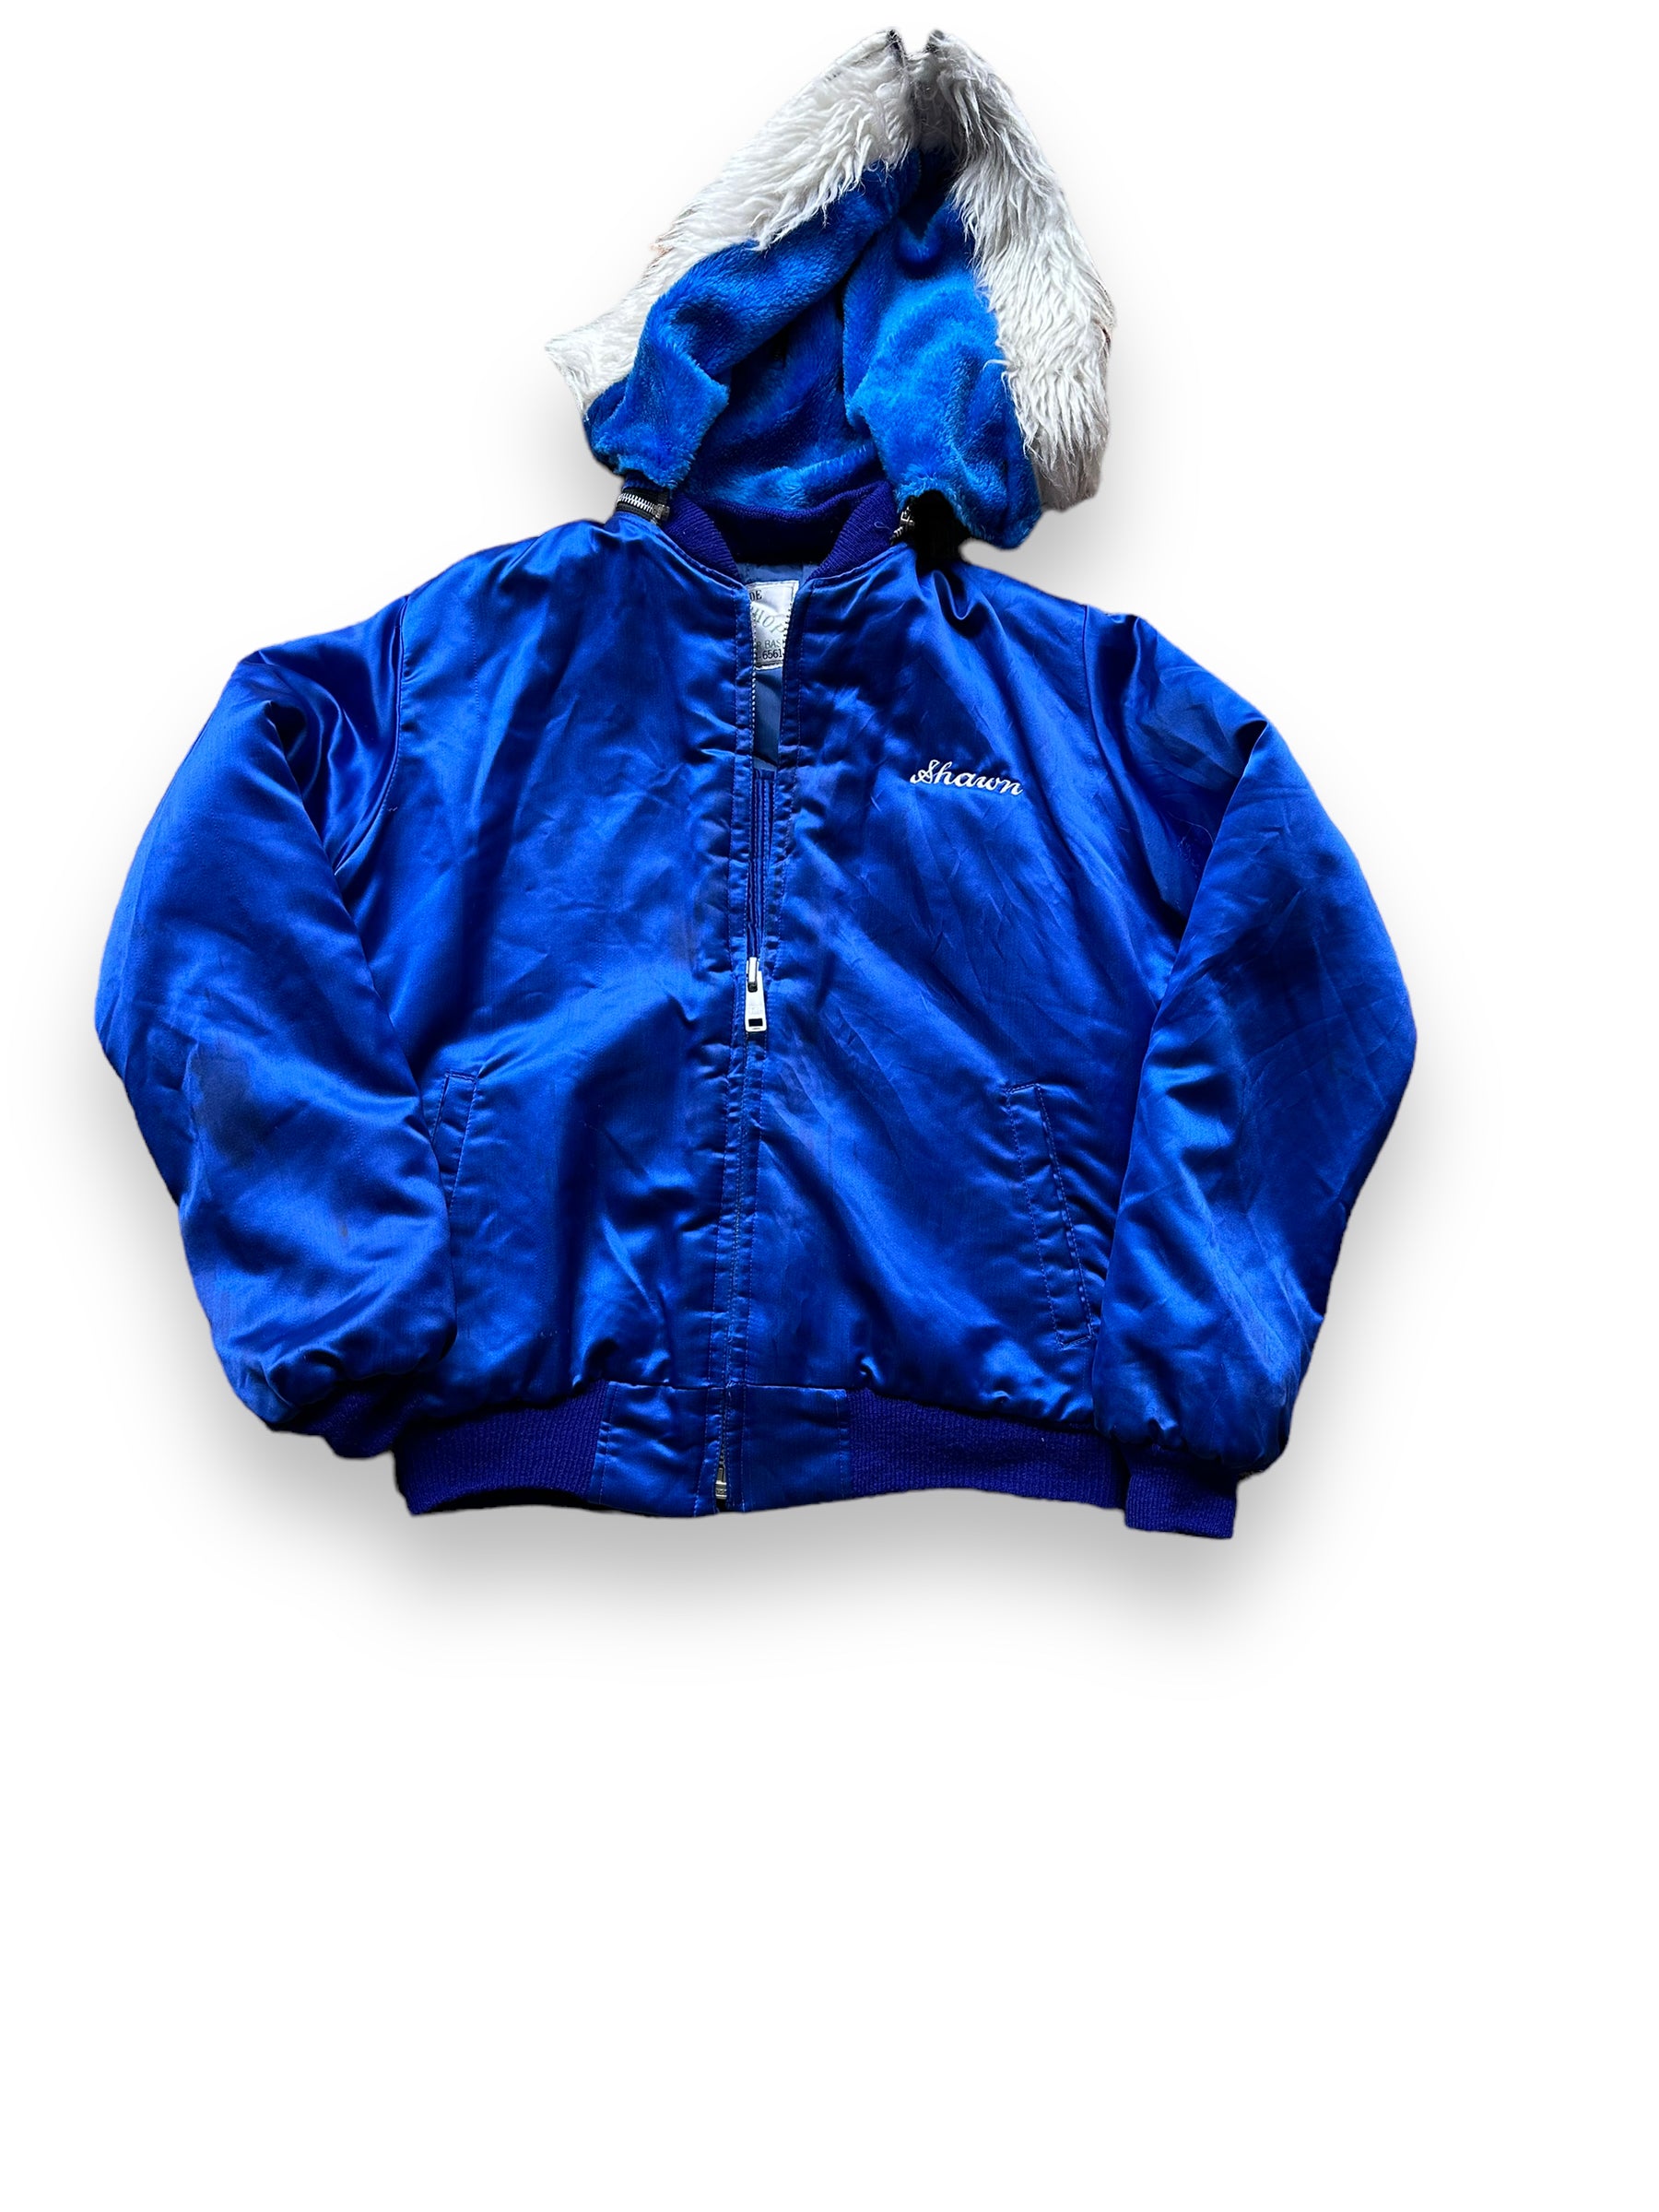 Front View of Vintage Blue Korea Souvenir Jacket SZ L | Vintage Souvenir Jacket Seattle | Barn Owl Vintage Seattle